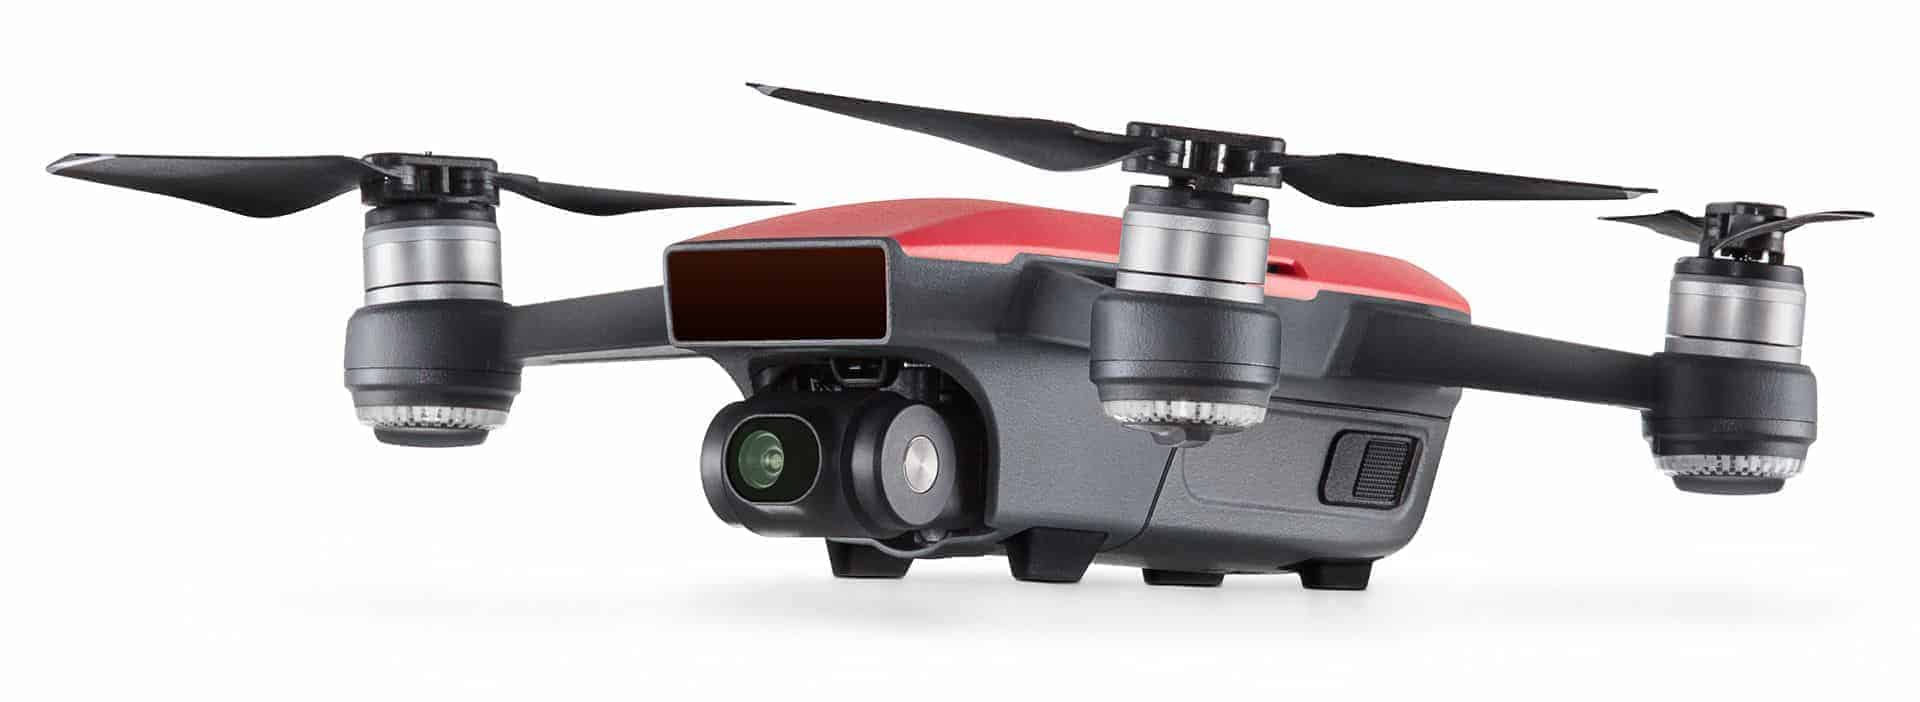 DJI Spark, drone que controla por gestos » Drones Baratos Ya!